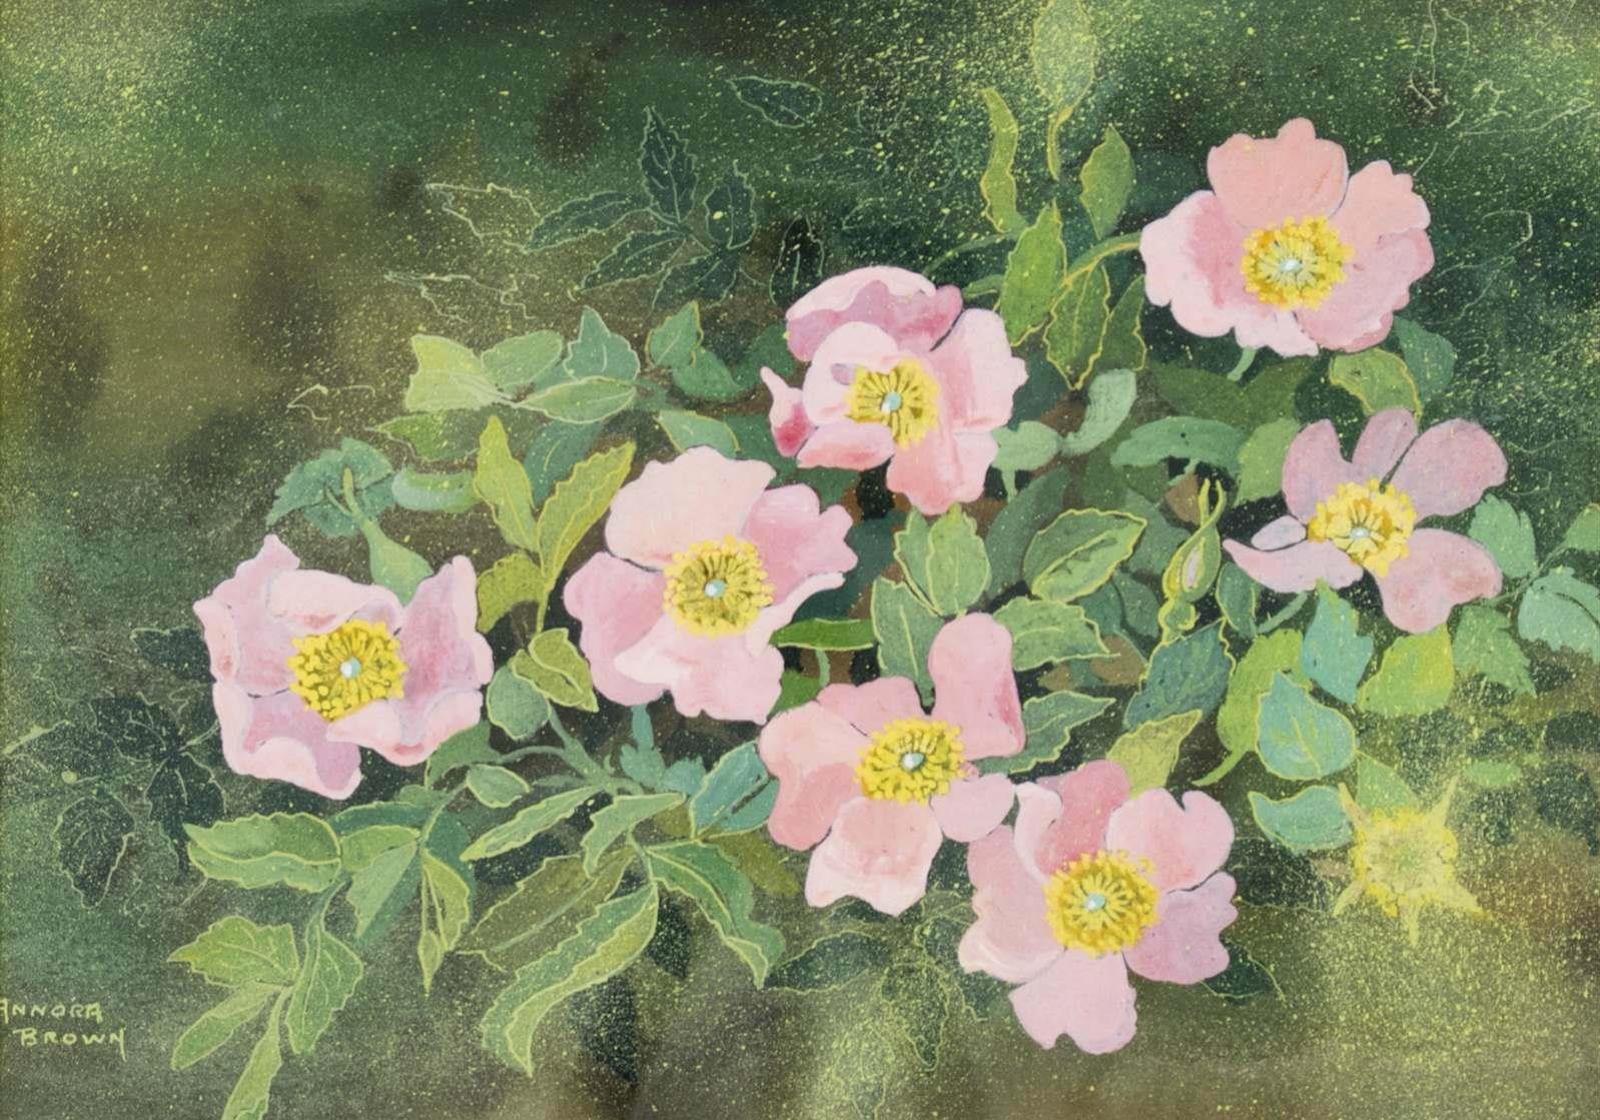 Annora Brown (1899-1987) - Alberta Wild Roses